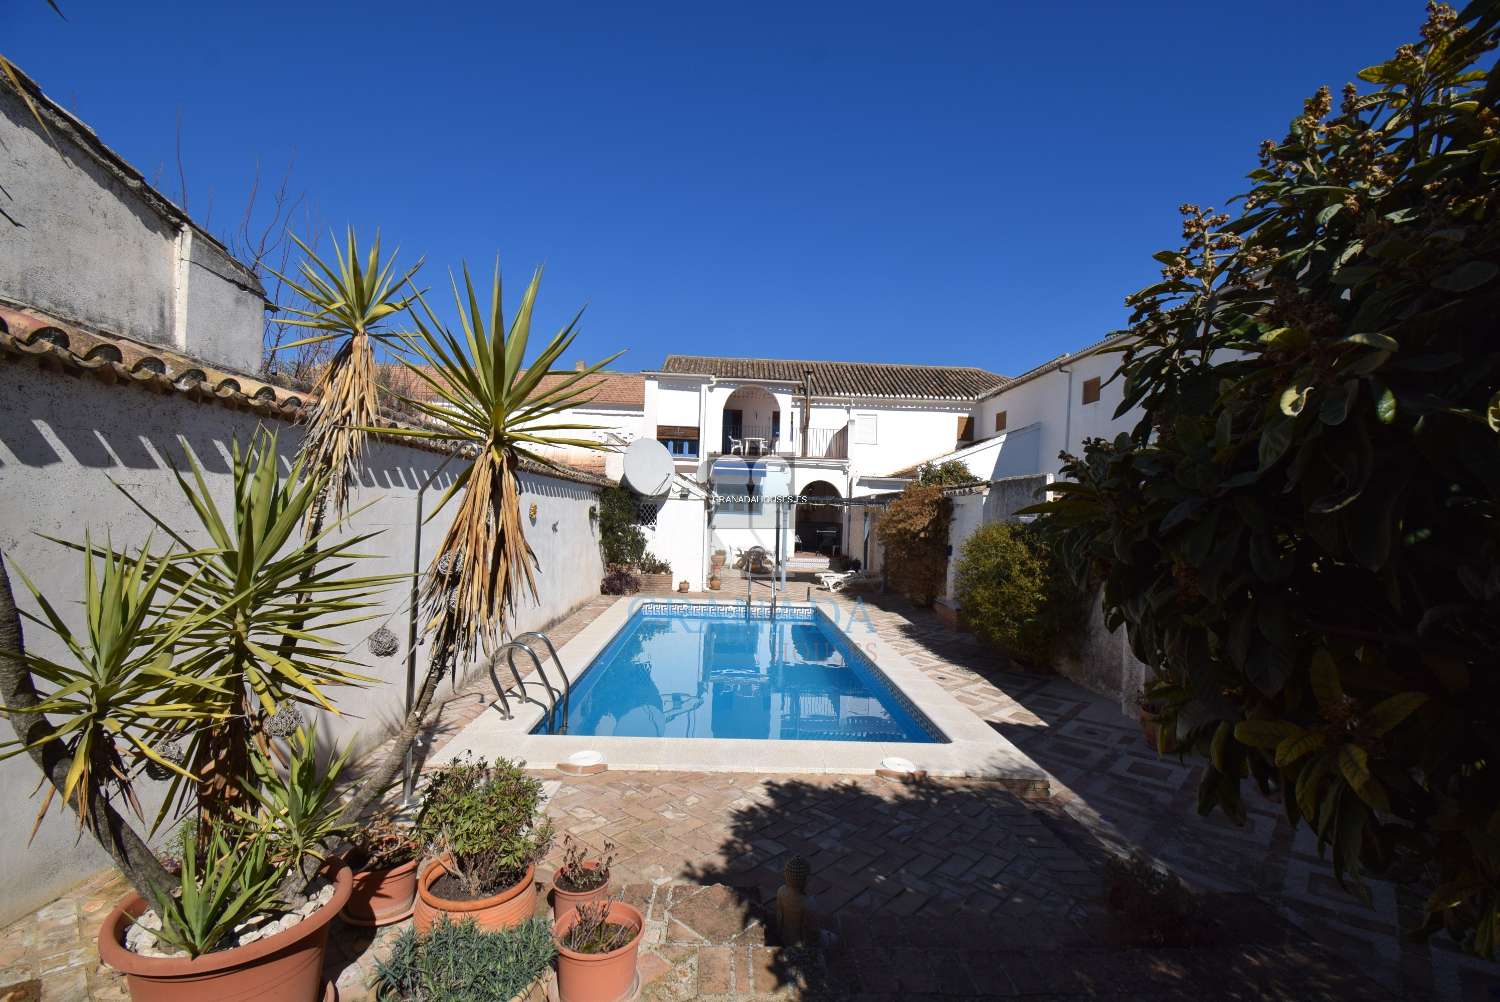 Vackert andalusiskt hus med stor uteplats och pool